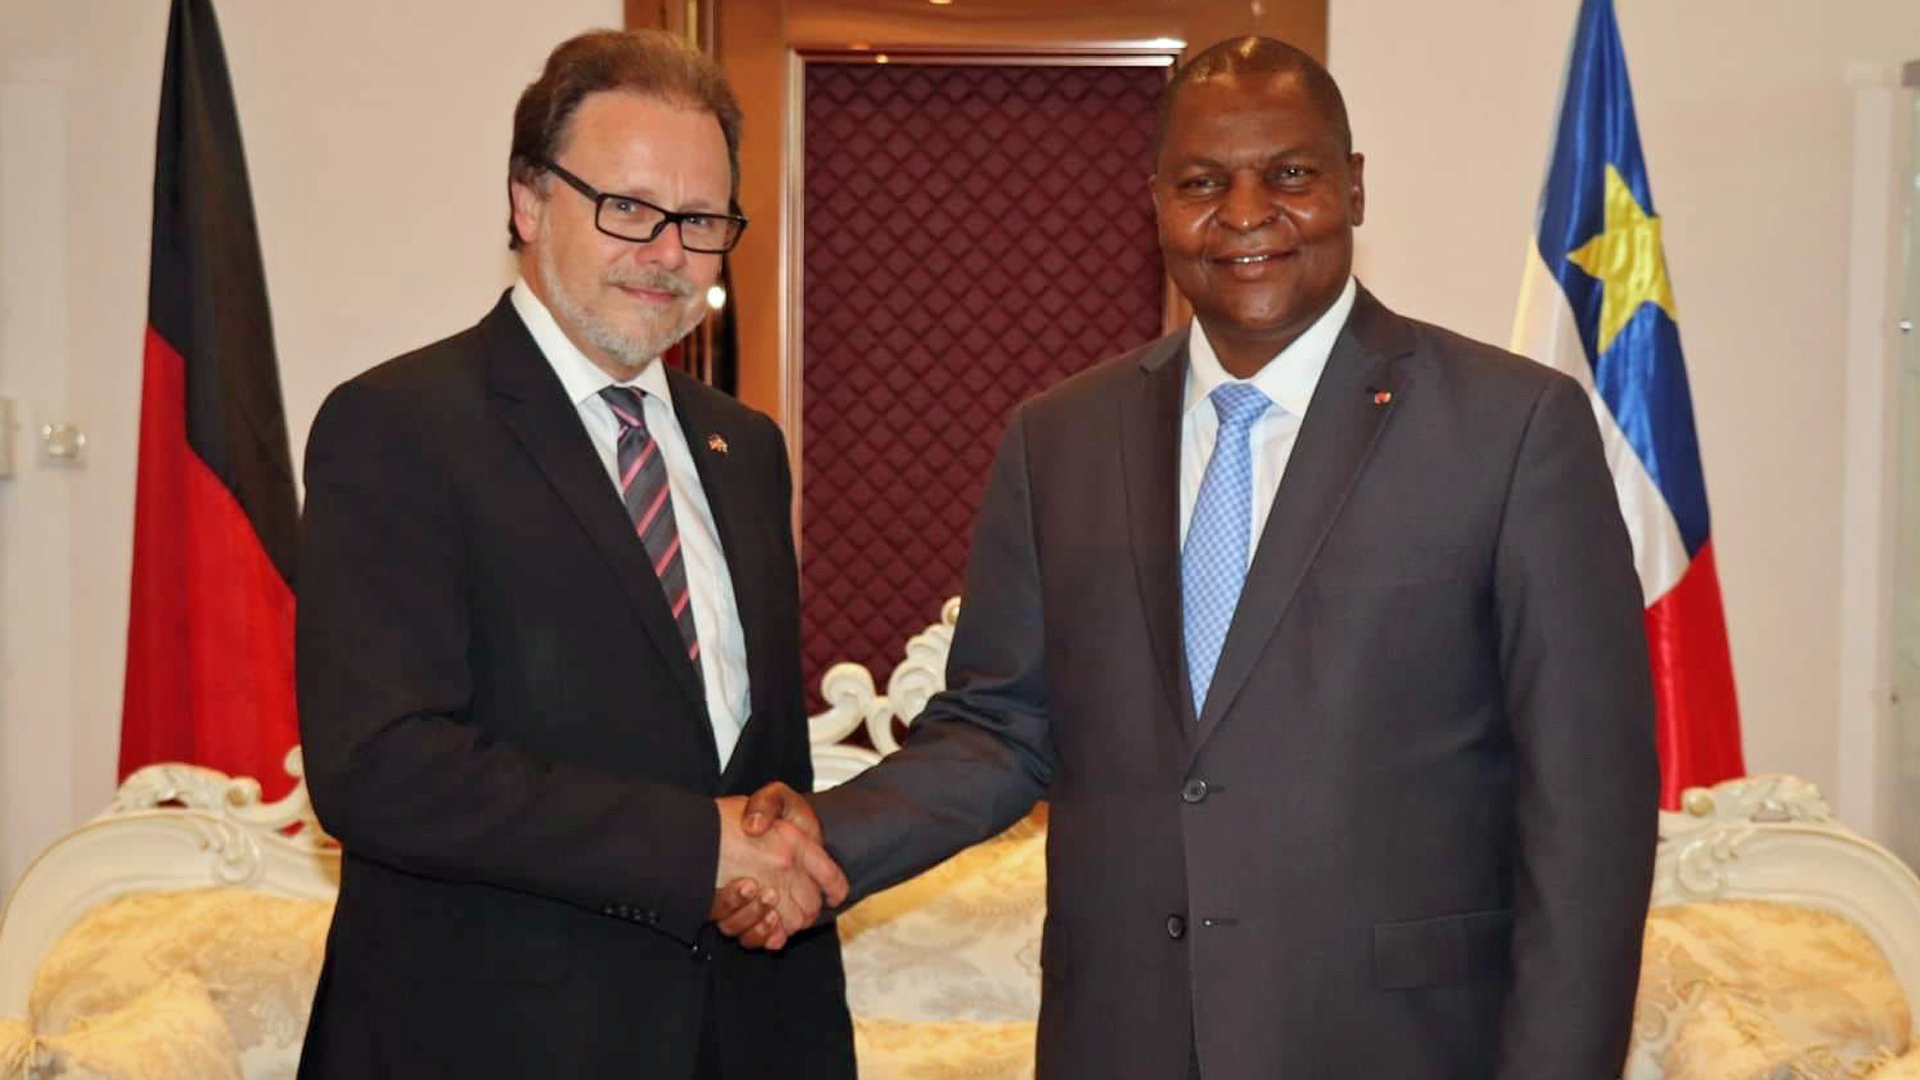 Frank Heinrich gemeinsam mit dem Präsidenten der Zentralafrikanischen Republik, Faustin Archange Touadéra